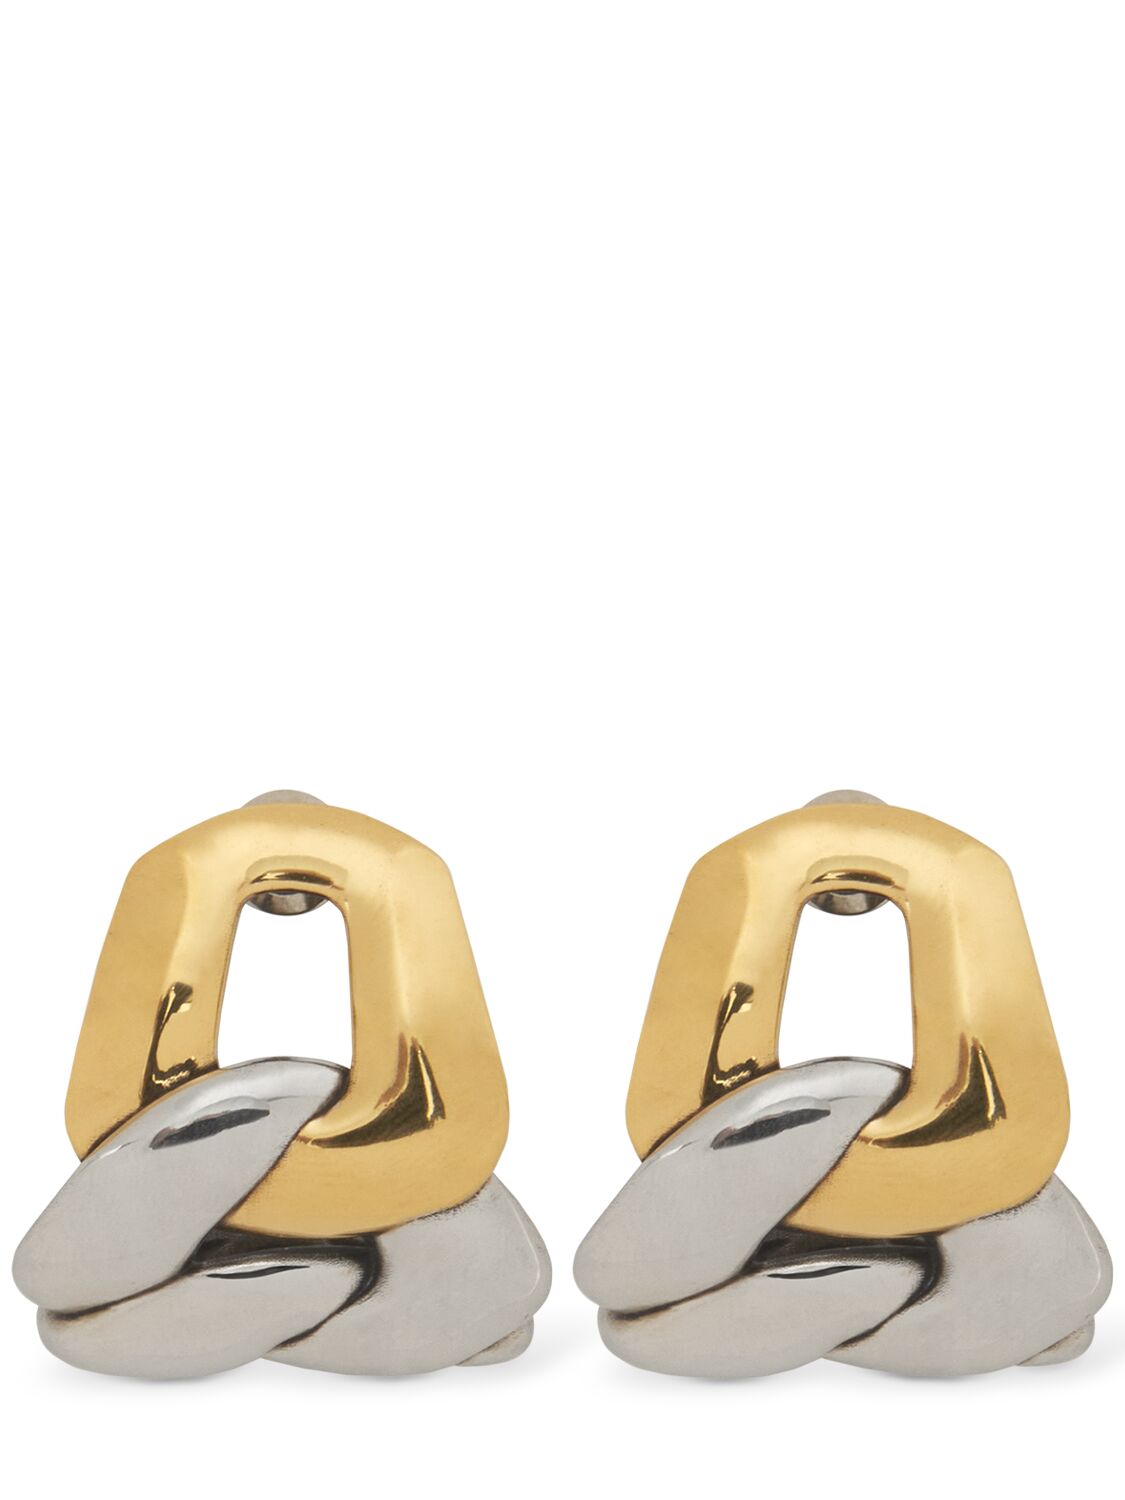 Alexander Mcqueen Chain Brass Earrings In Gold/silver